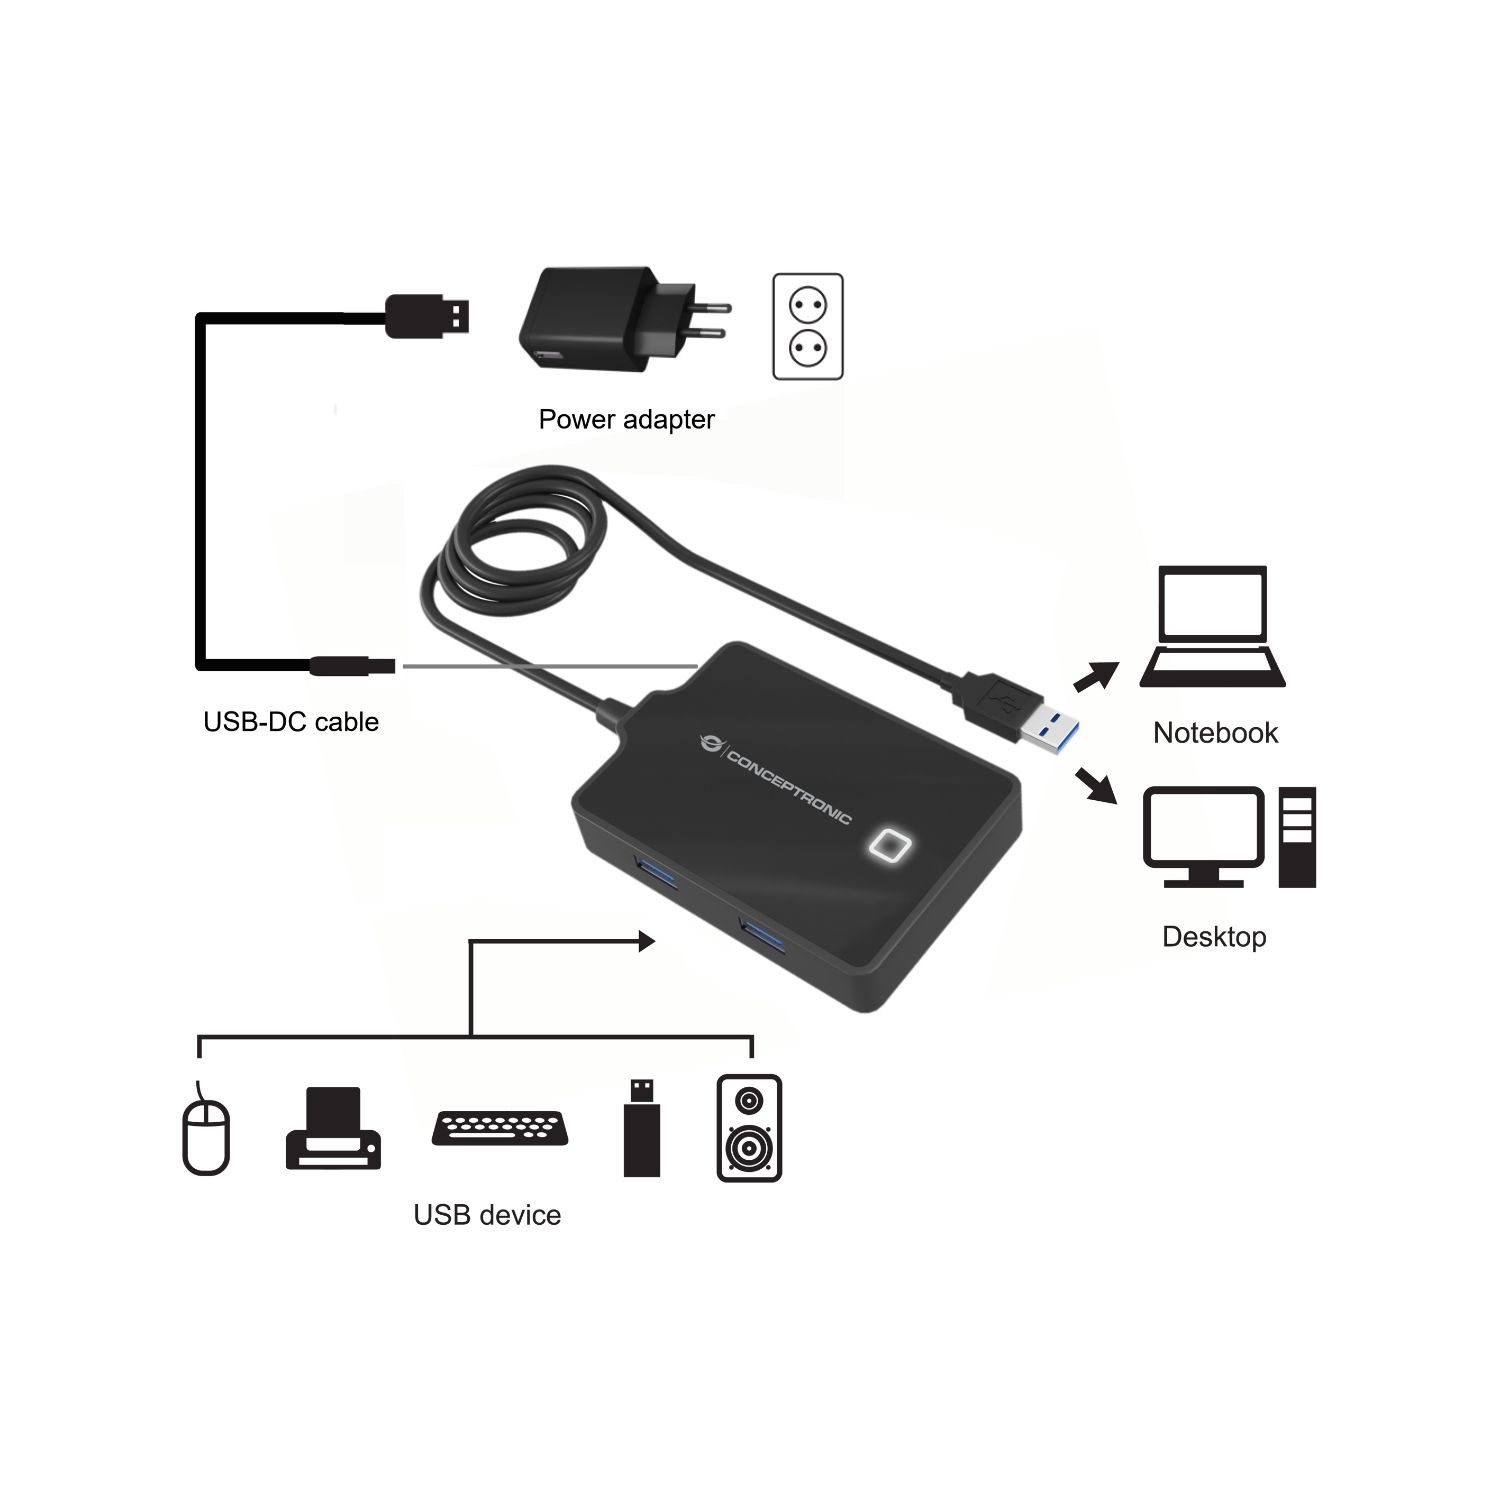 HUBBIES11BP - Hub CONCEPTRONIC USB-A 3.0 a 4xUSB-A 3.0 Adaptador de Alimentacin 90cm Negro (HUBBIES11BP)